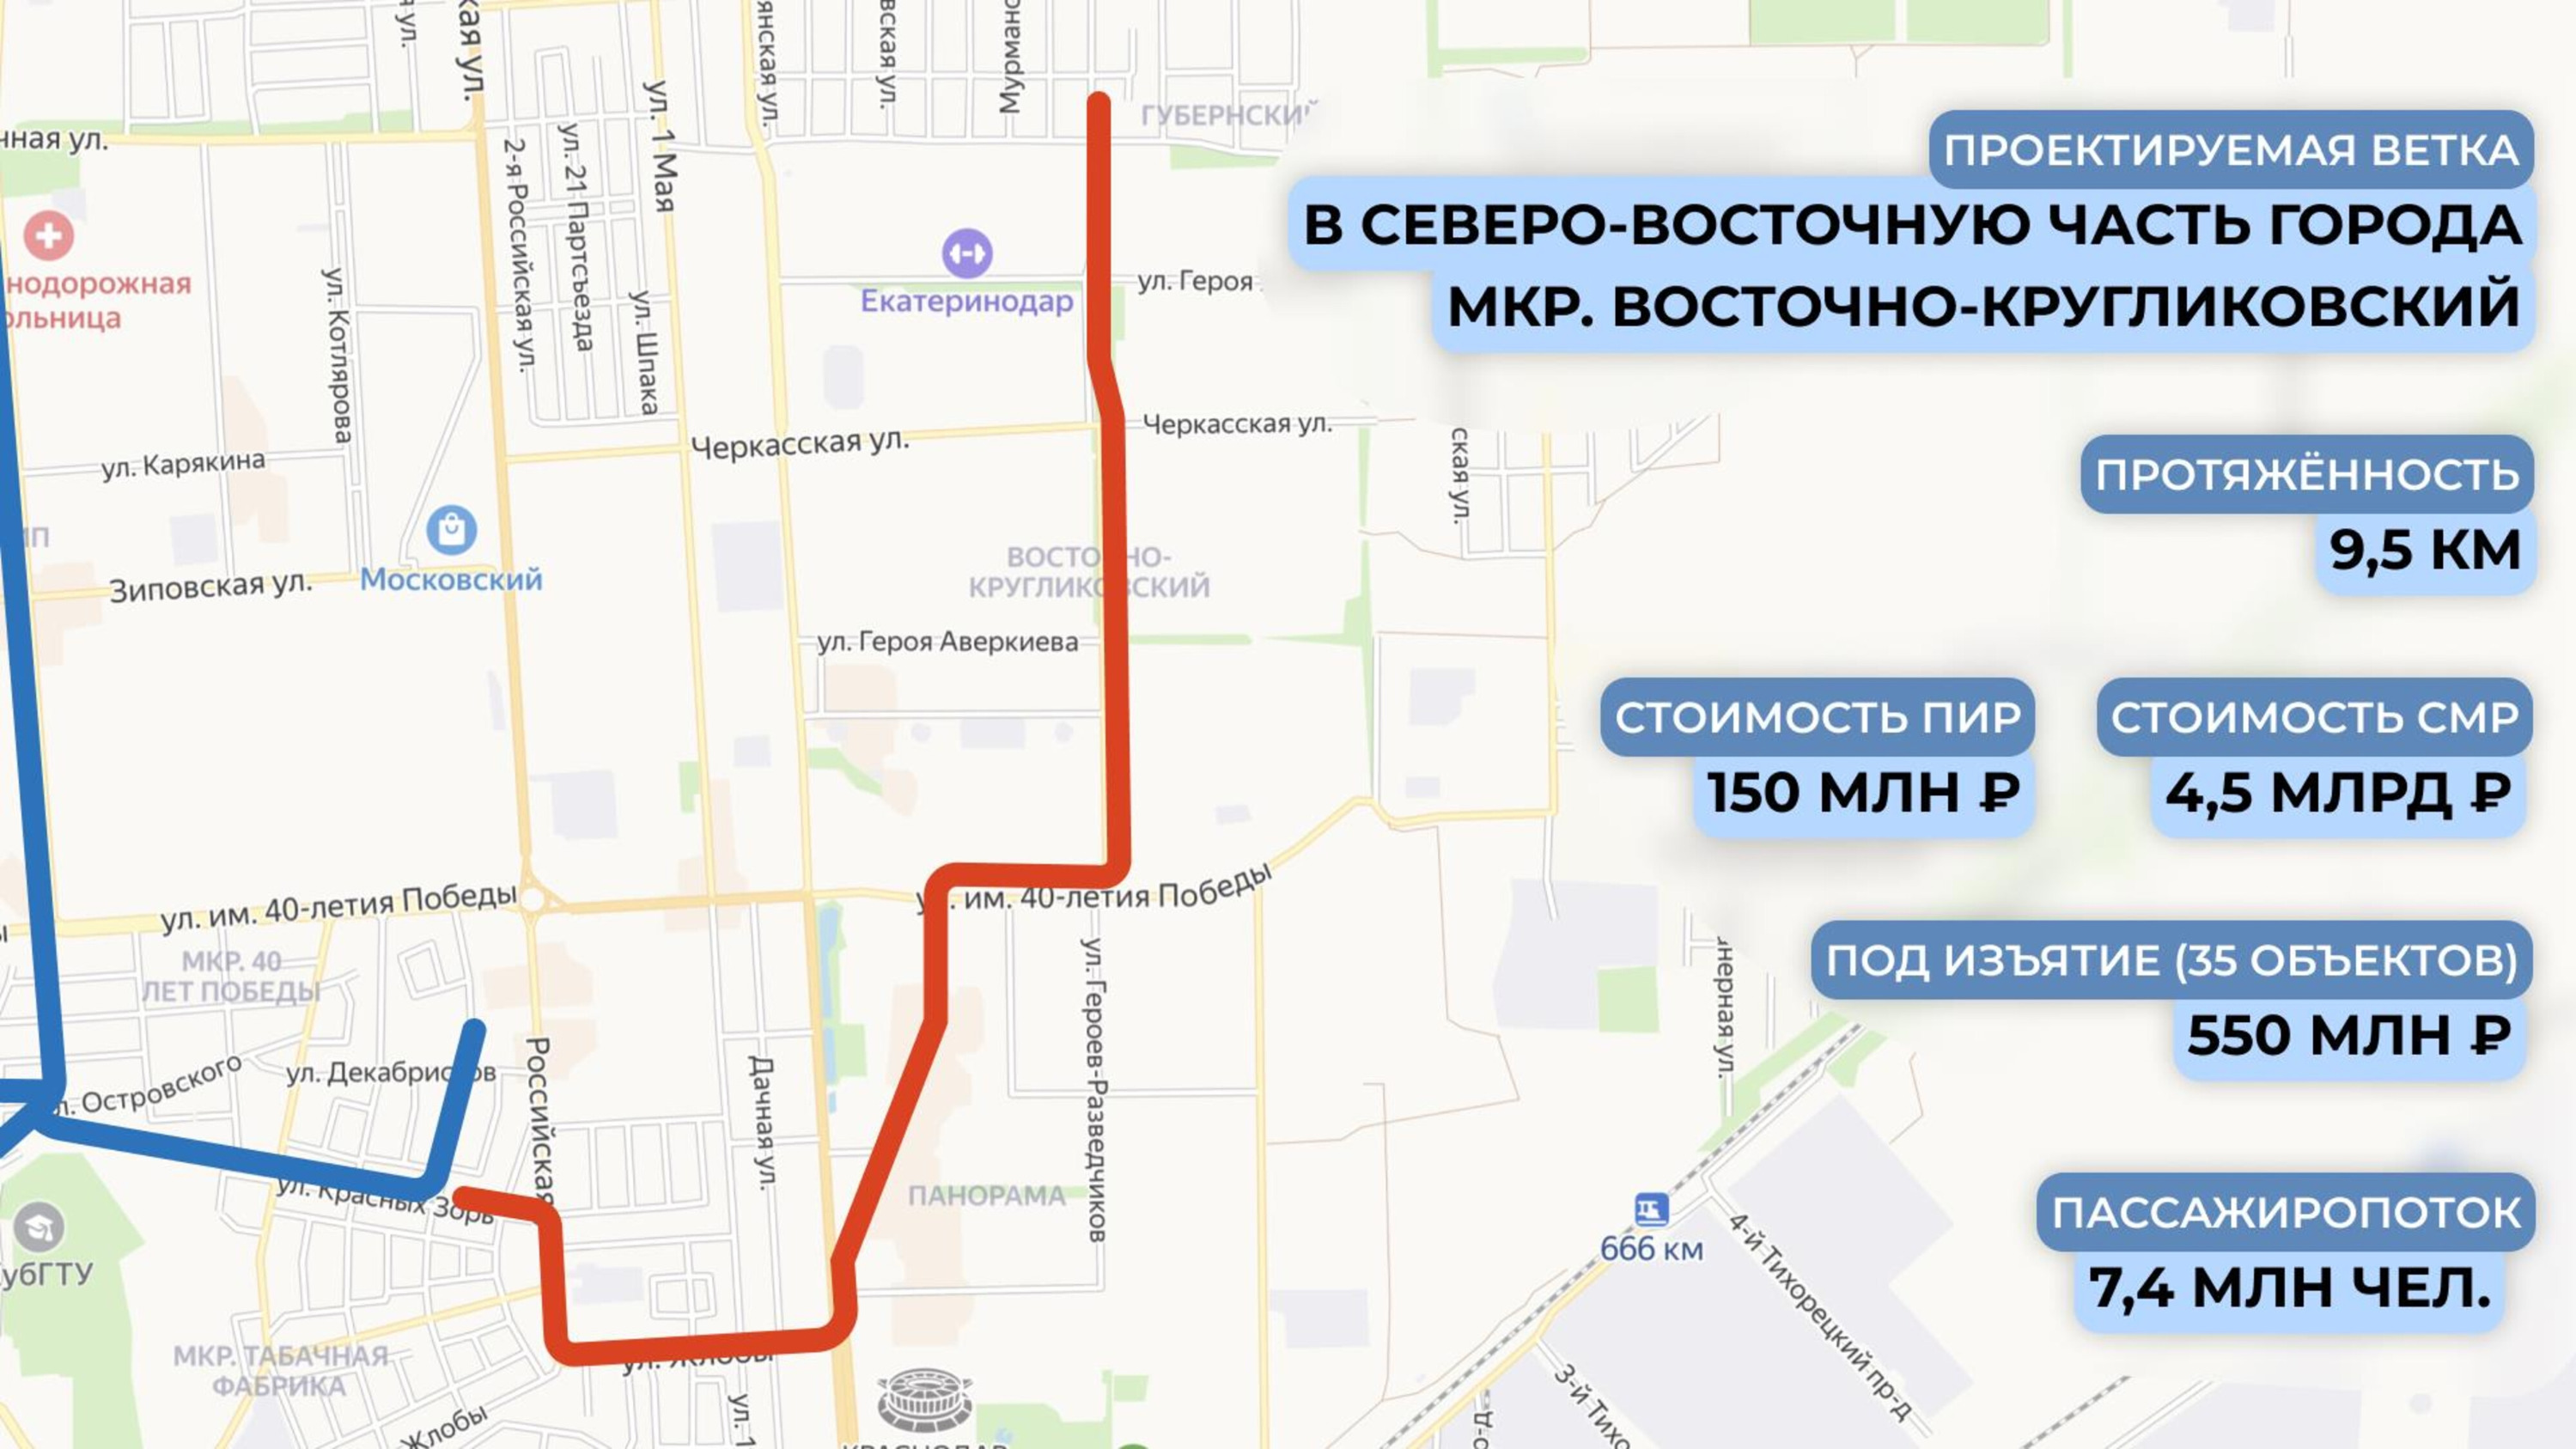 Новый проект строительства трамвайной линии в Восточно-Кругликовском микрорайоне